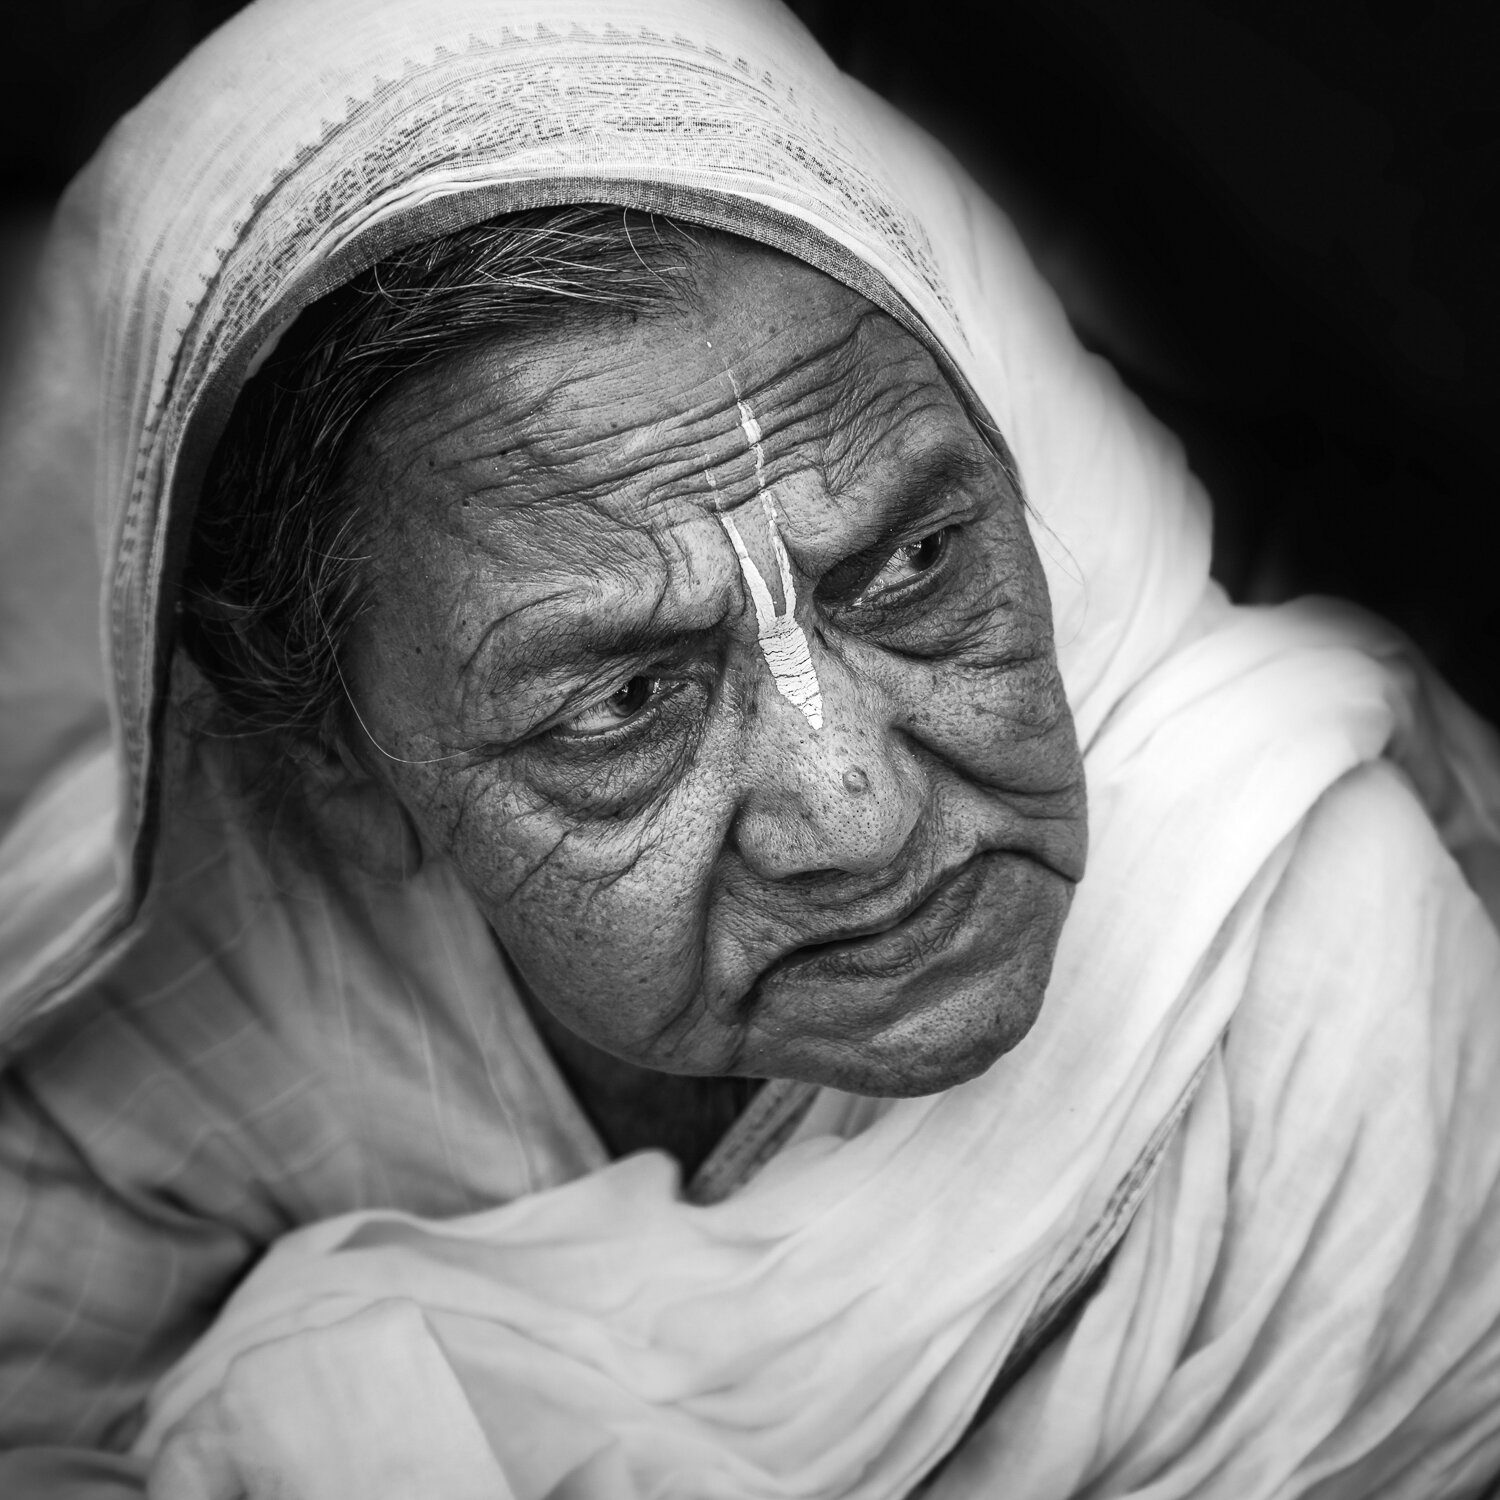 widow of vrindavan with wrinkles by prathamesh dixit.jpg